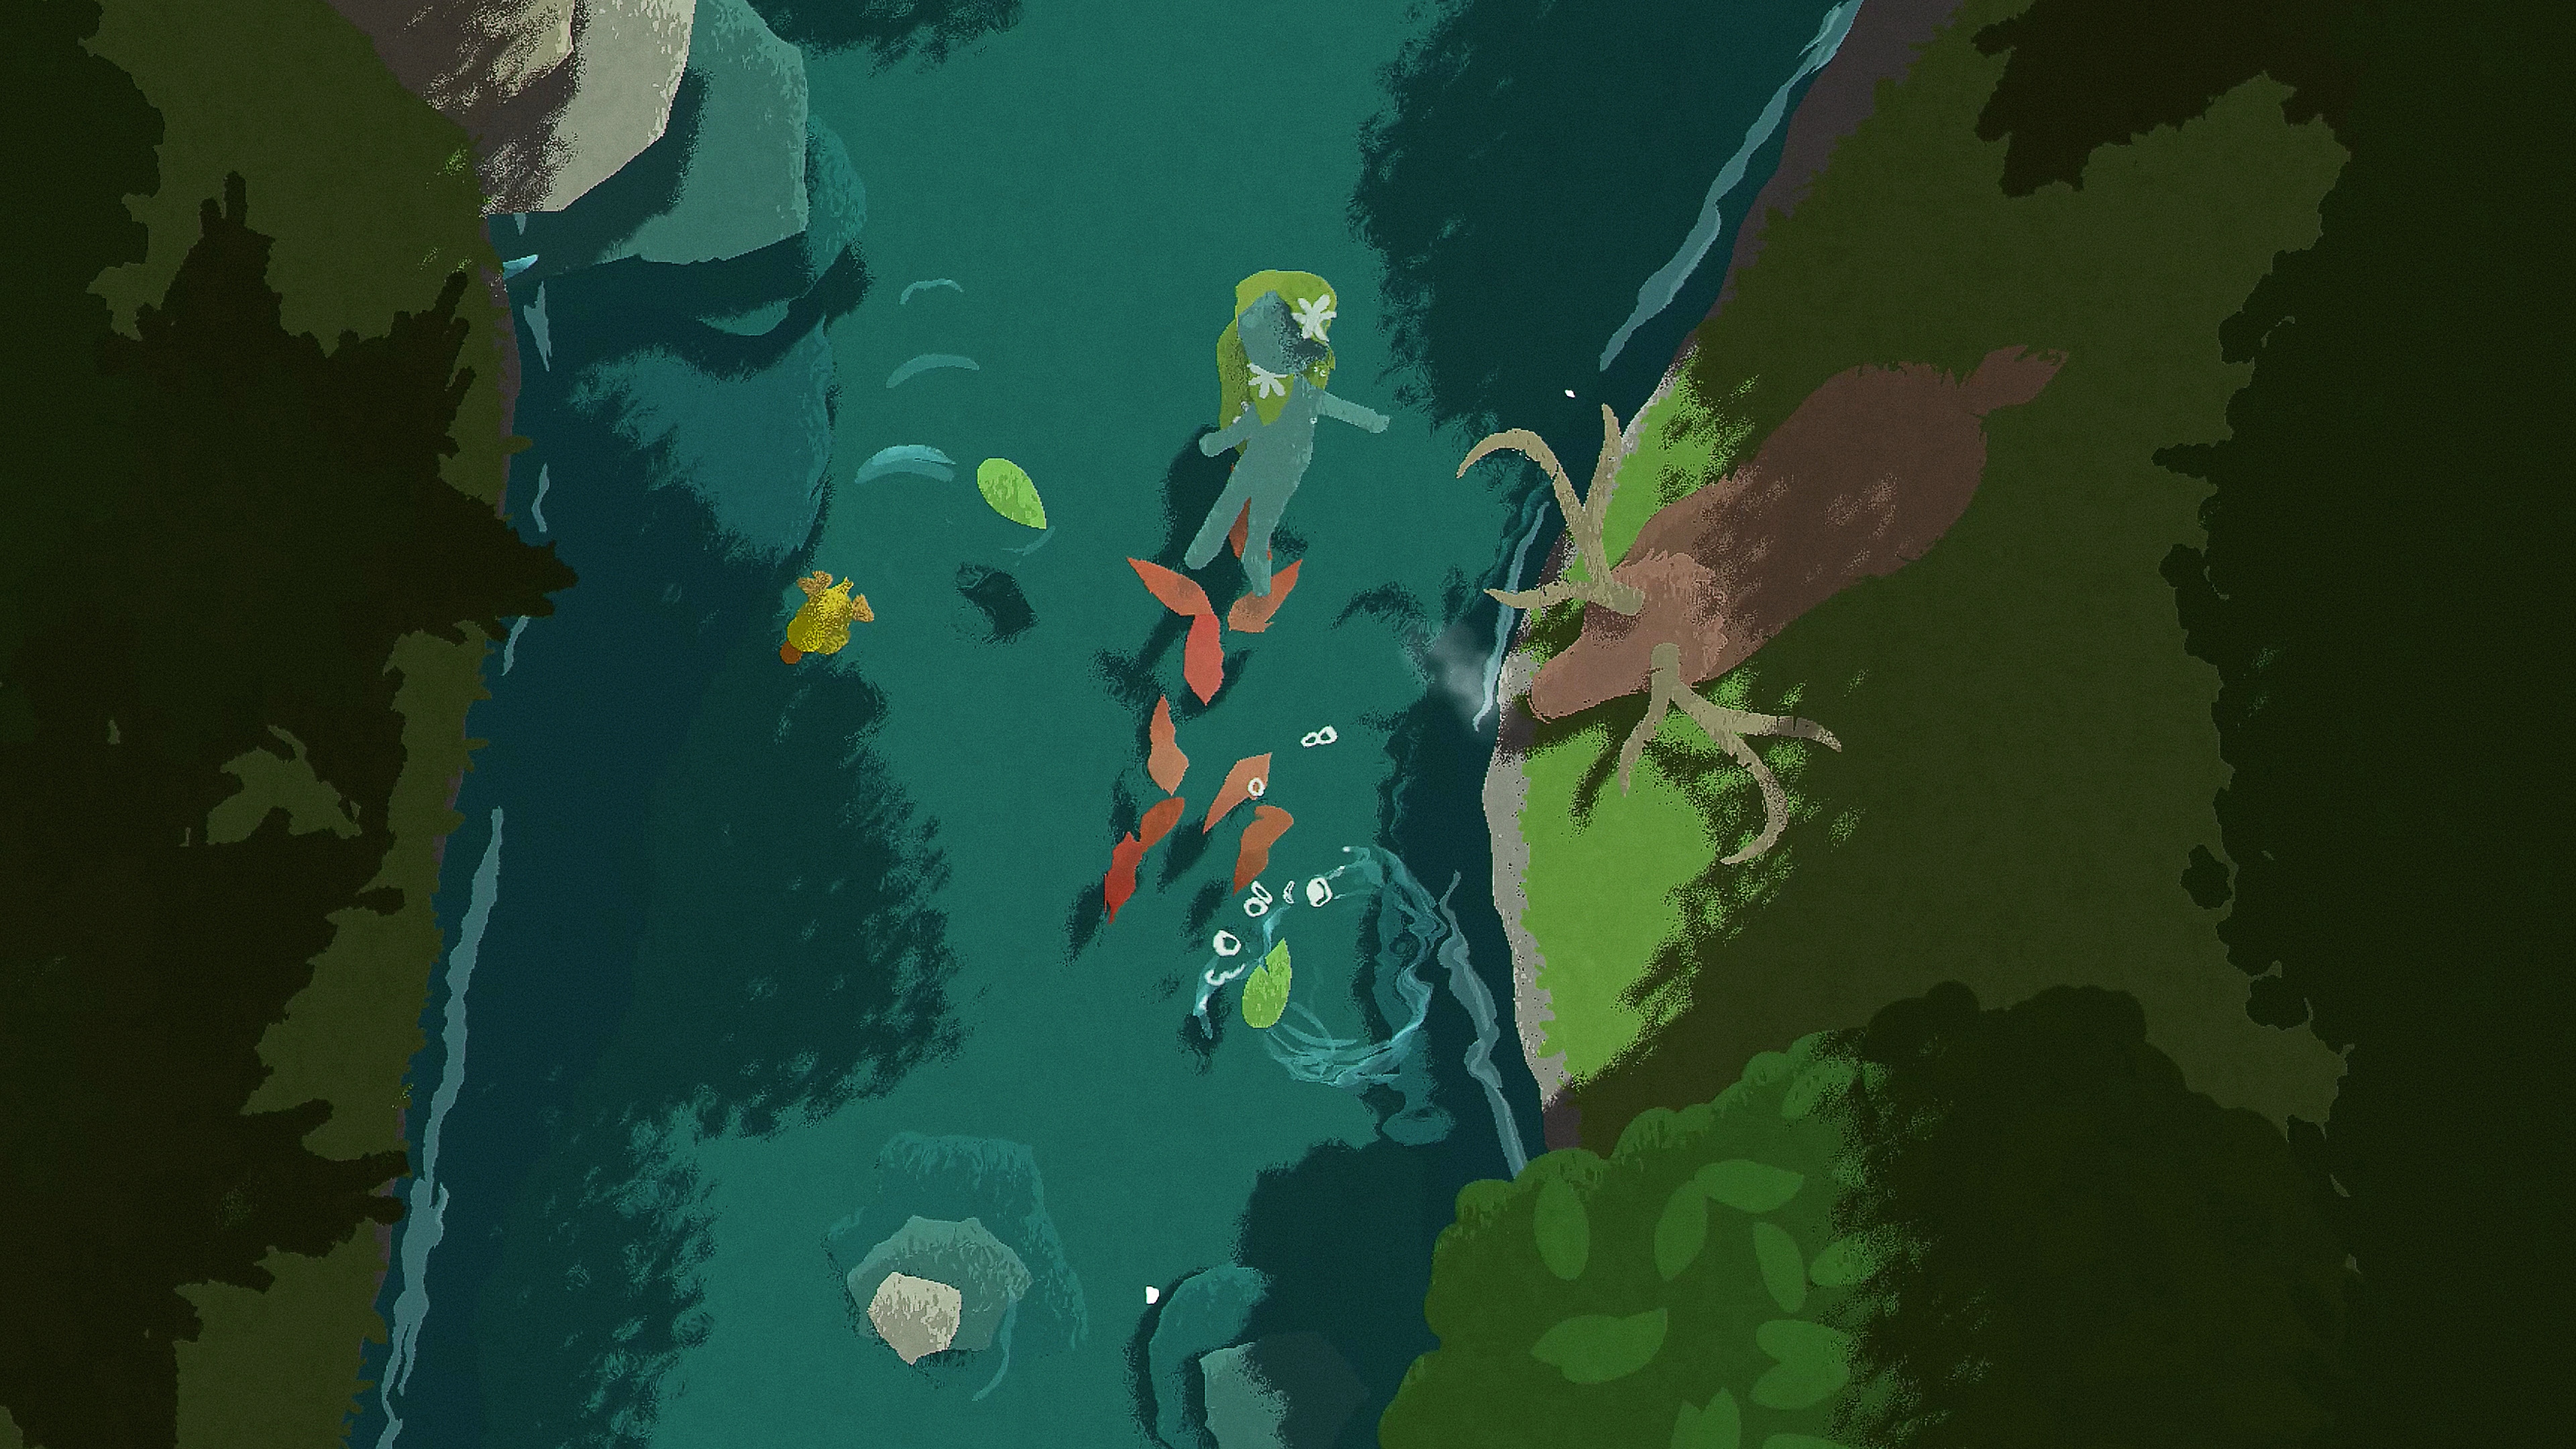 Naiad – skjermbilde av en karakter som flyter nedover en elv mens en hjort står ved elvebredden